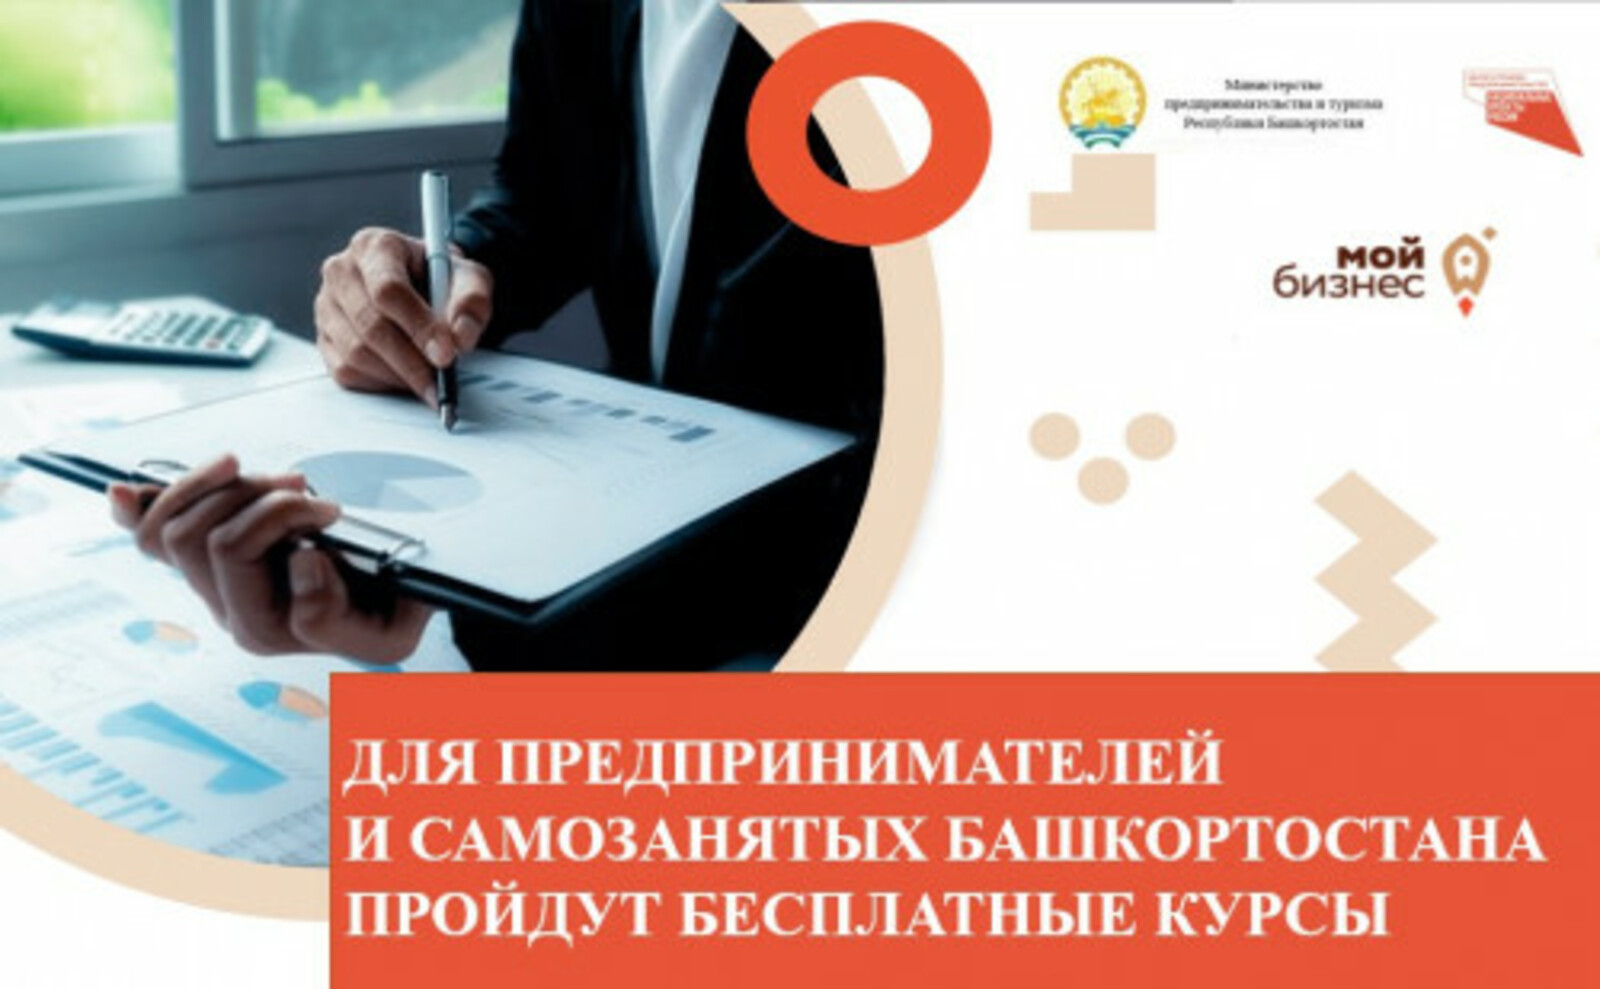 Для предпринимателей и самозанятых Башкортостана: приглашаем предпринимателей и самозанятых региона на бесплатные курсы